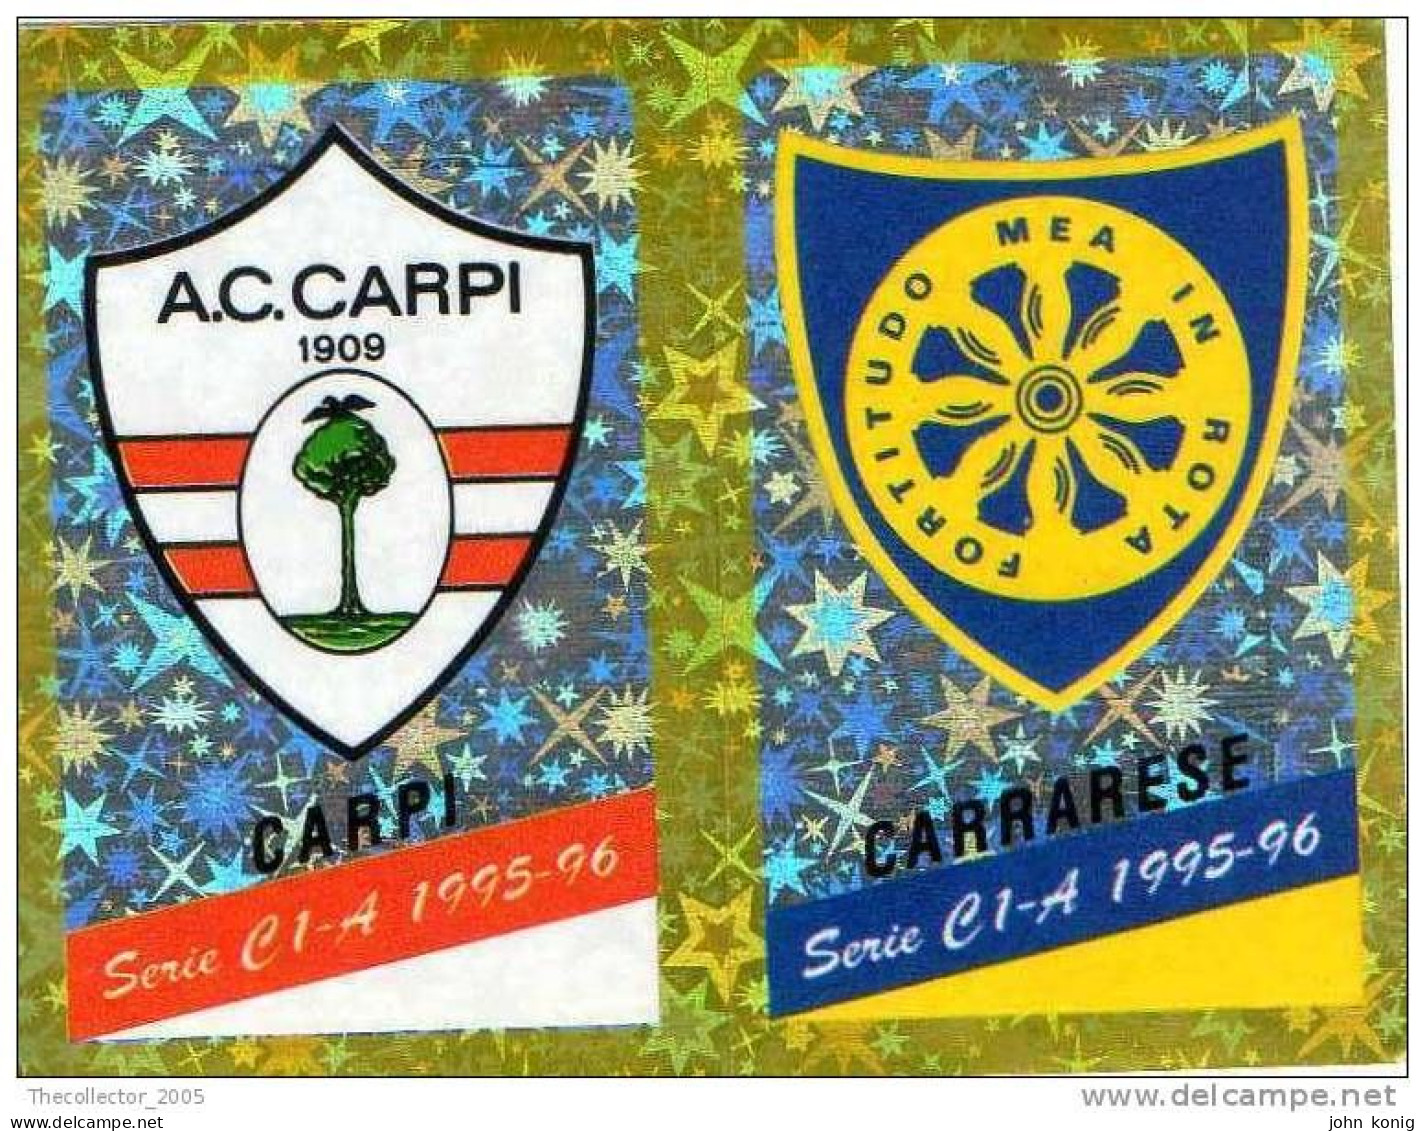 CALCIATORI - CALCIO Figurine Panini-calciatori 1995-96-n.527ab-scudetto Carpi-Carrarese (prismatico) - NUOVA-MAI INCOLLA - Italienische Ausgabe